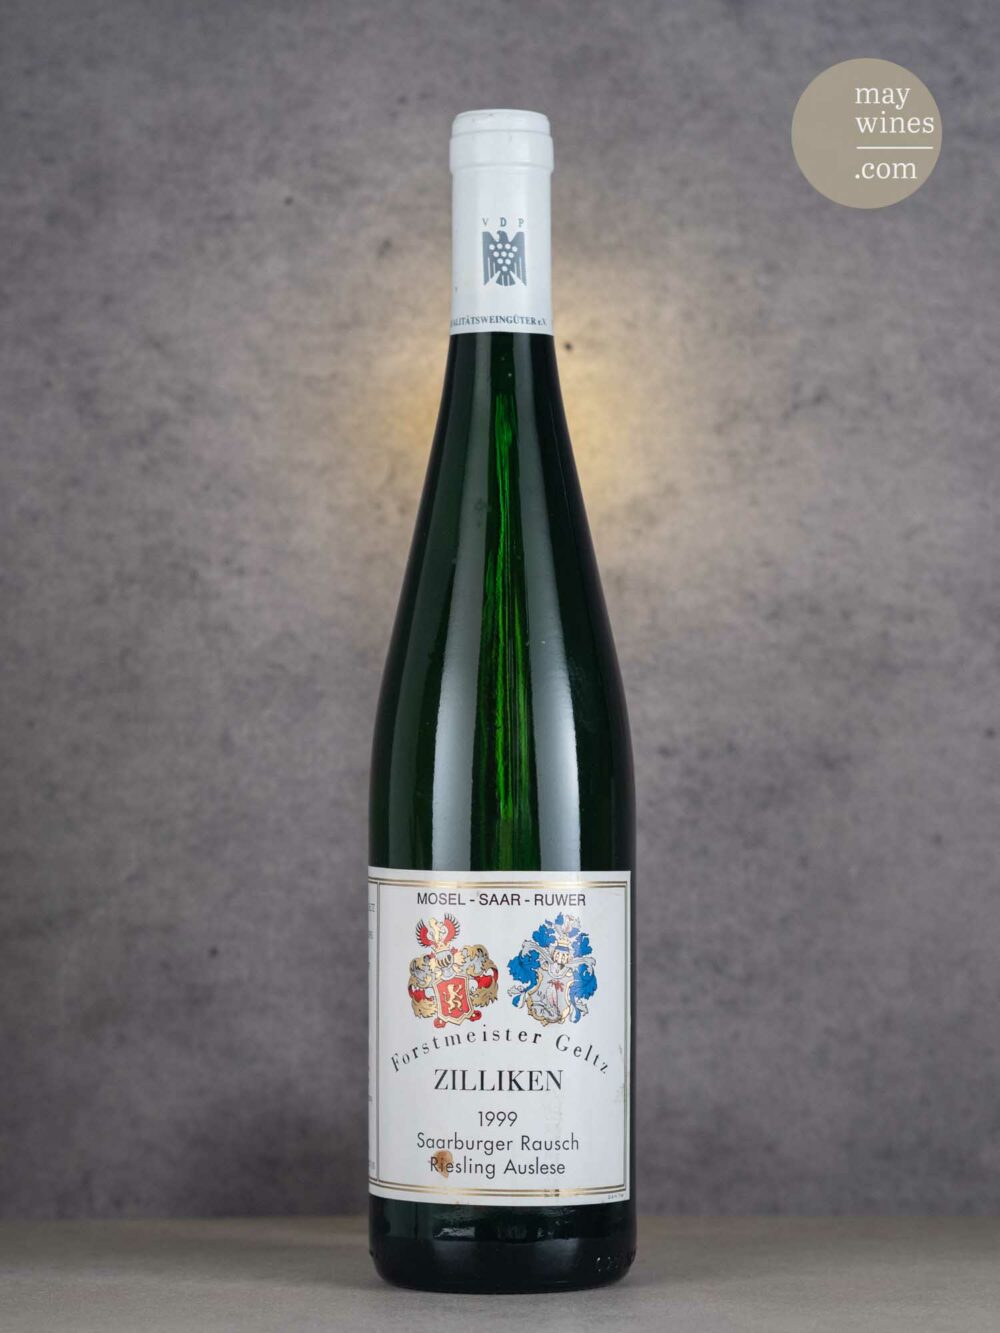 May Wines – Süßwein – 1999 Saarburger Rausch Riesling Auslese - Forstmeister Geltz Zilliken